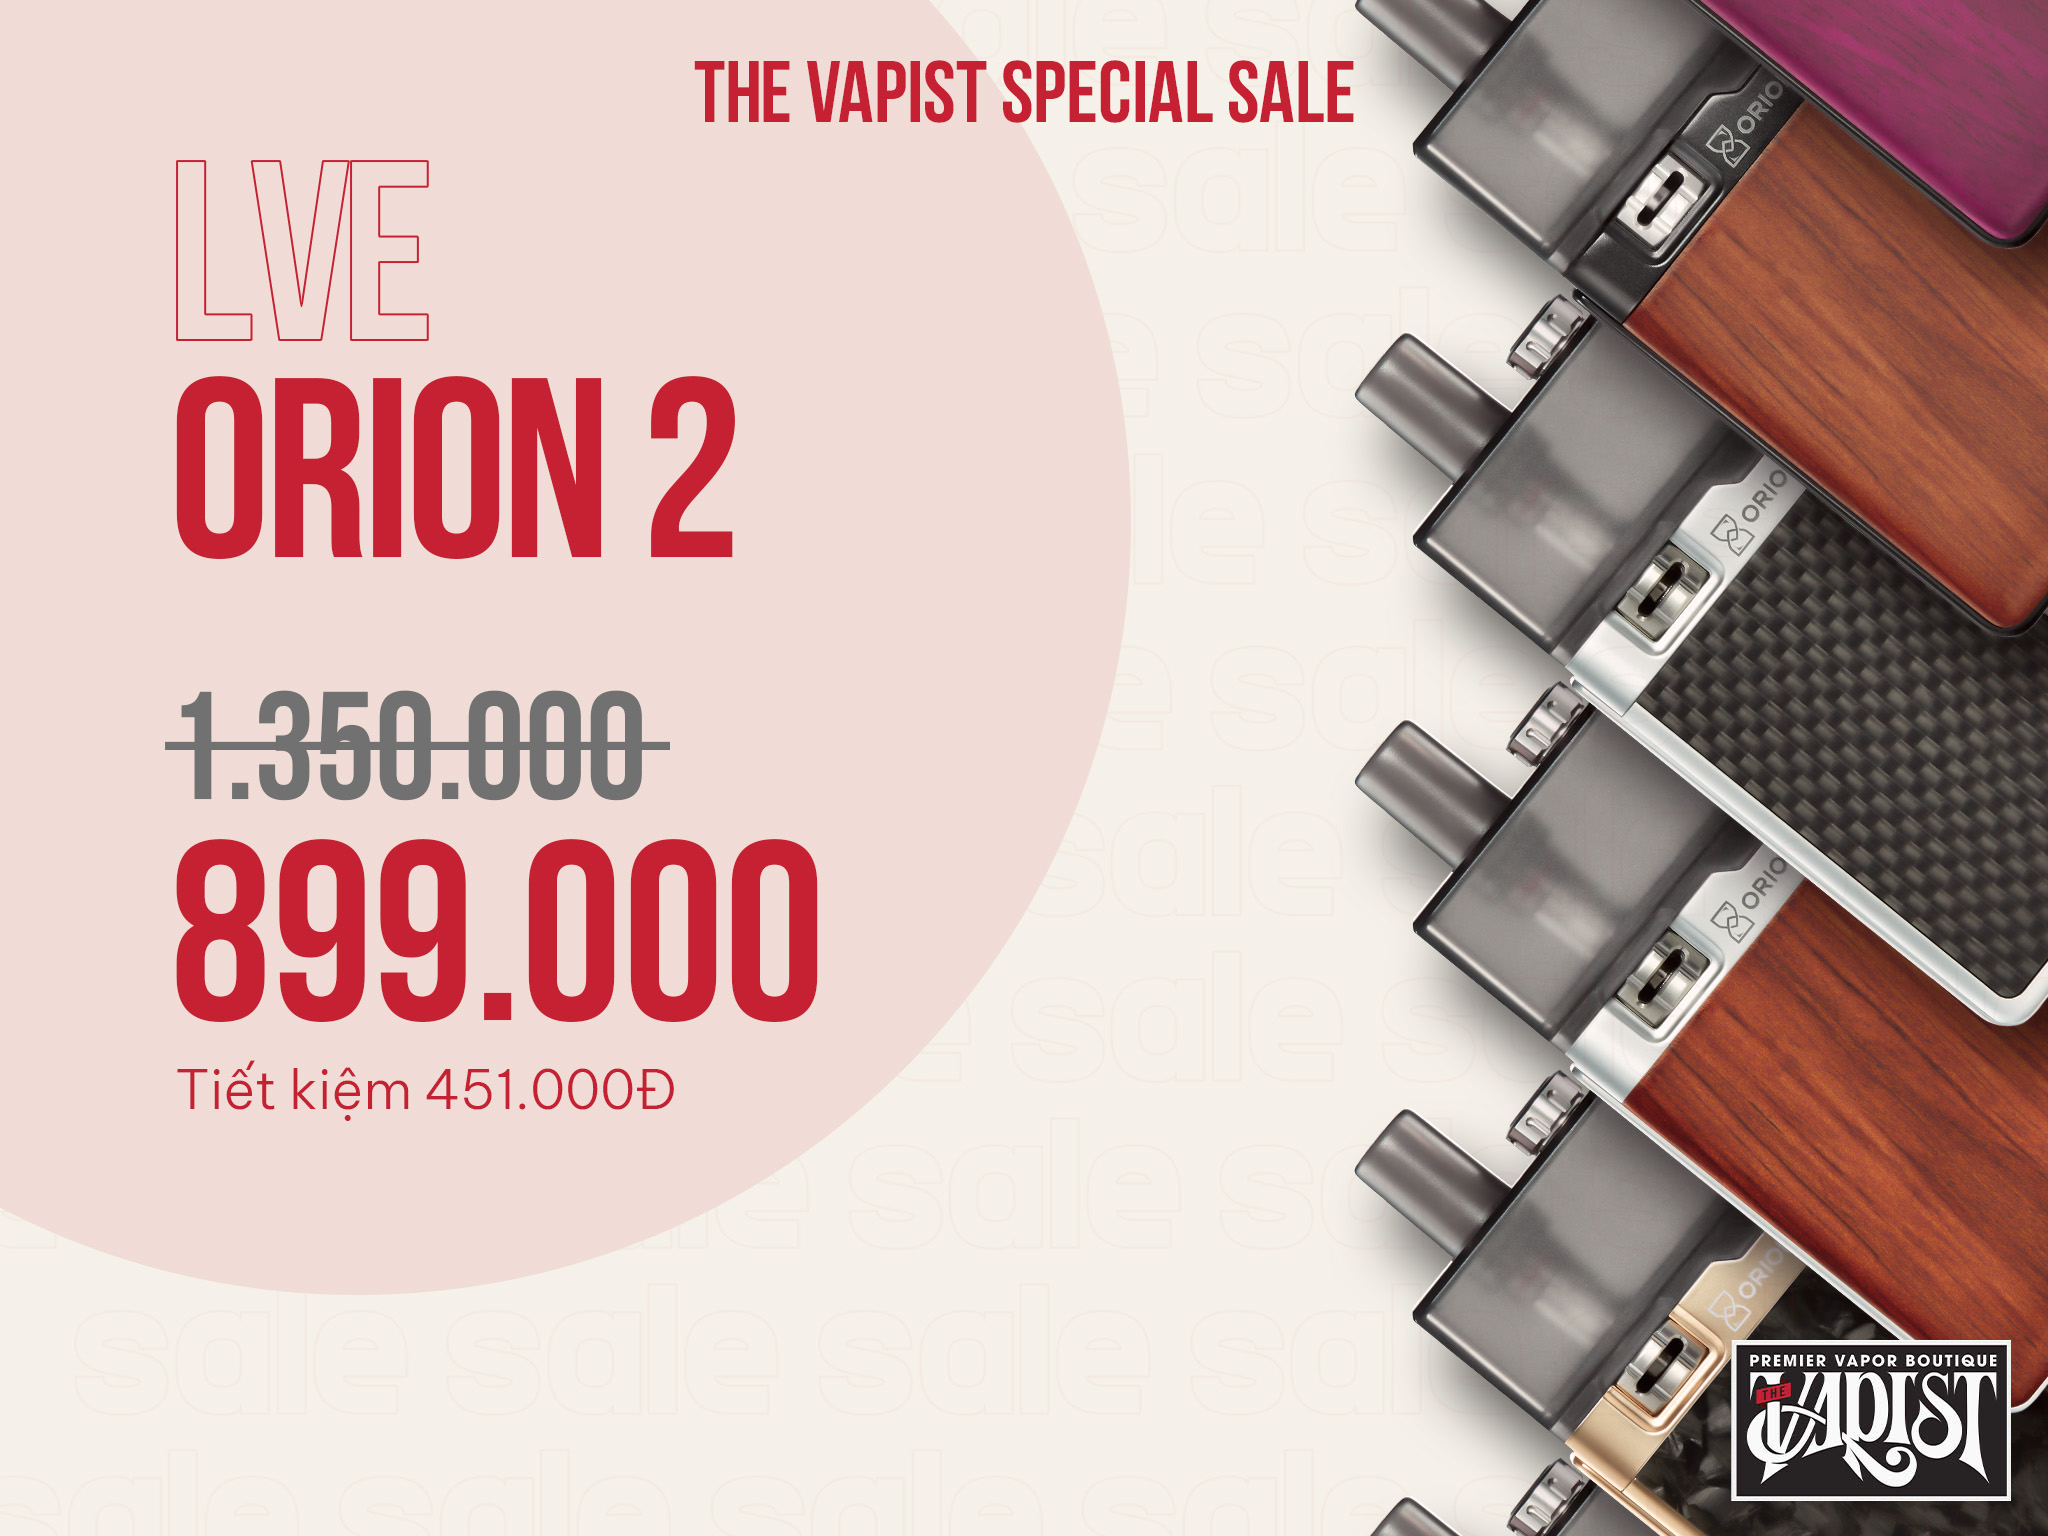 LVE Orion 2 sale 899